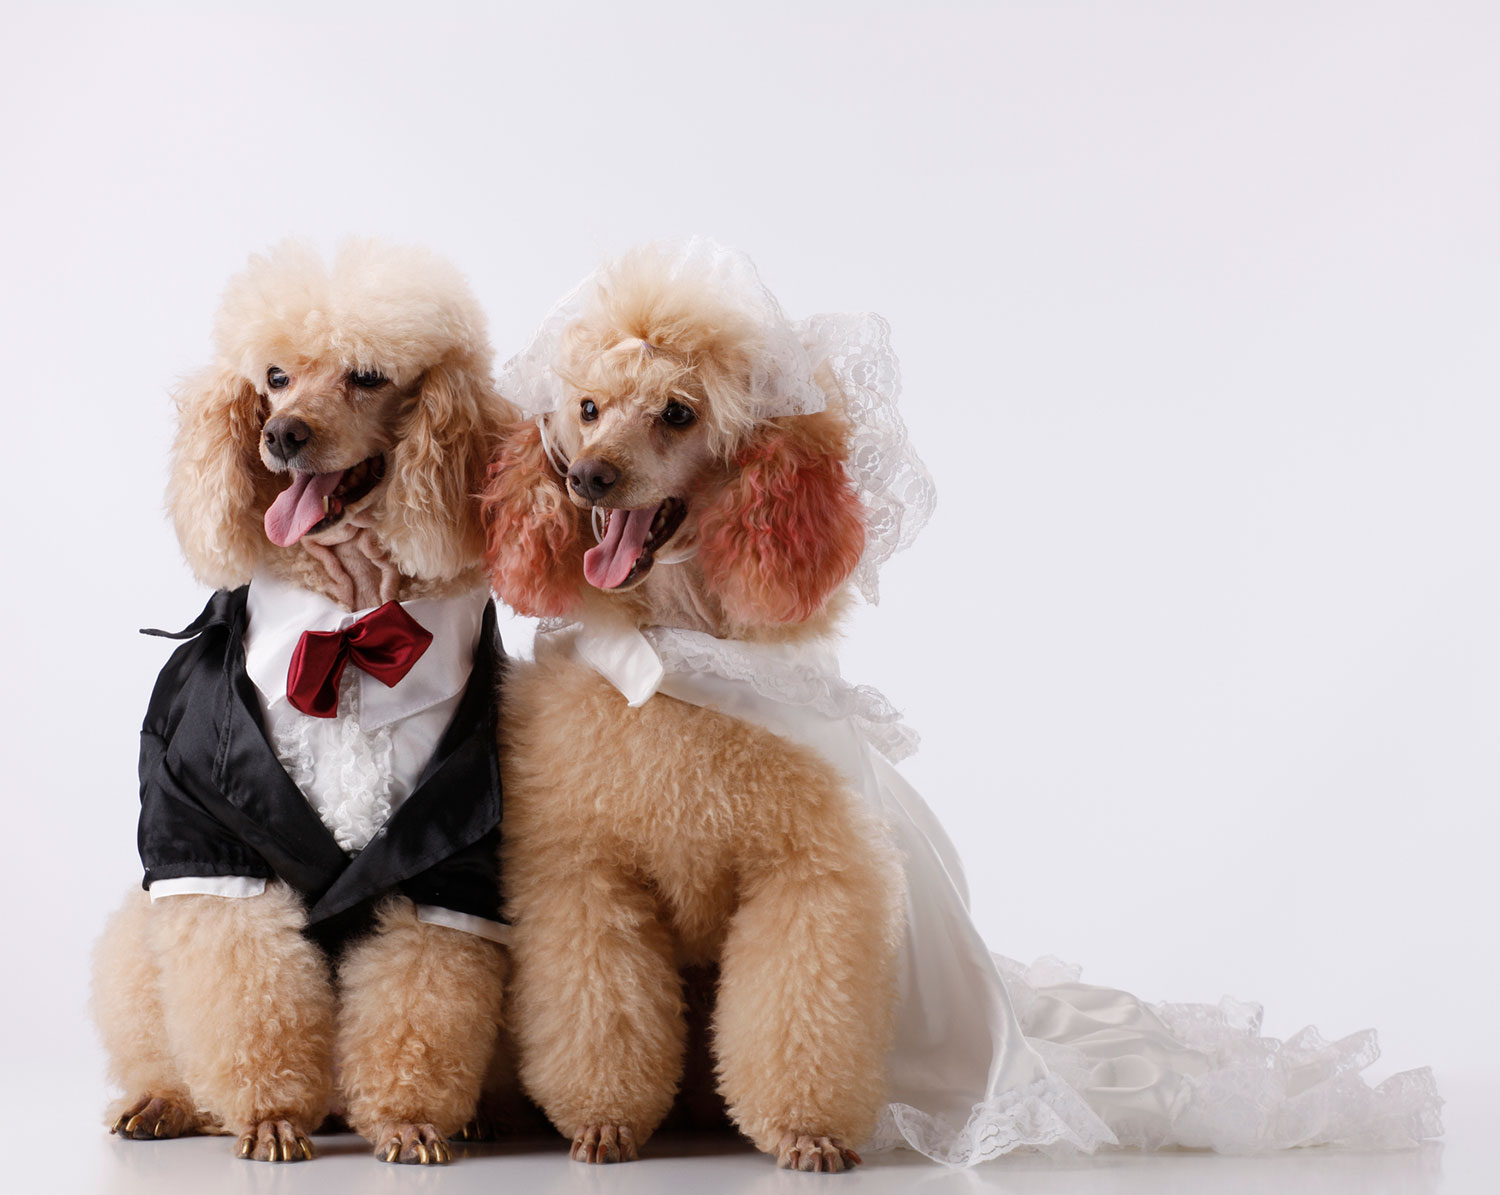 Poodles dressed as bride and groom